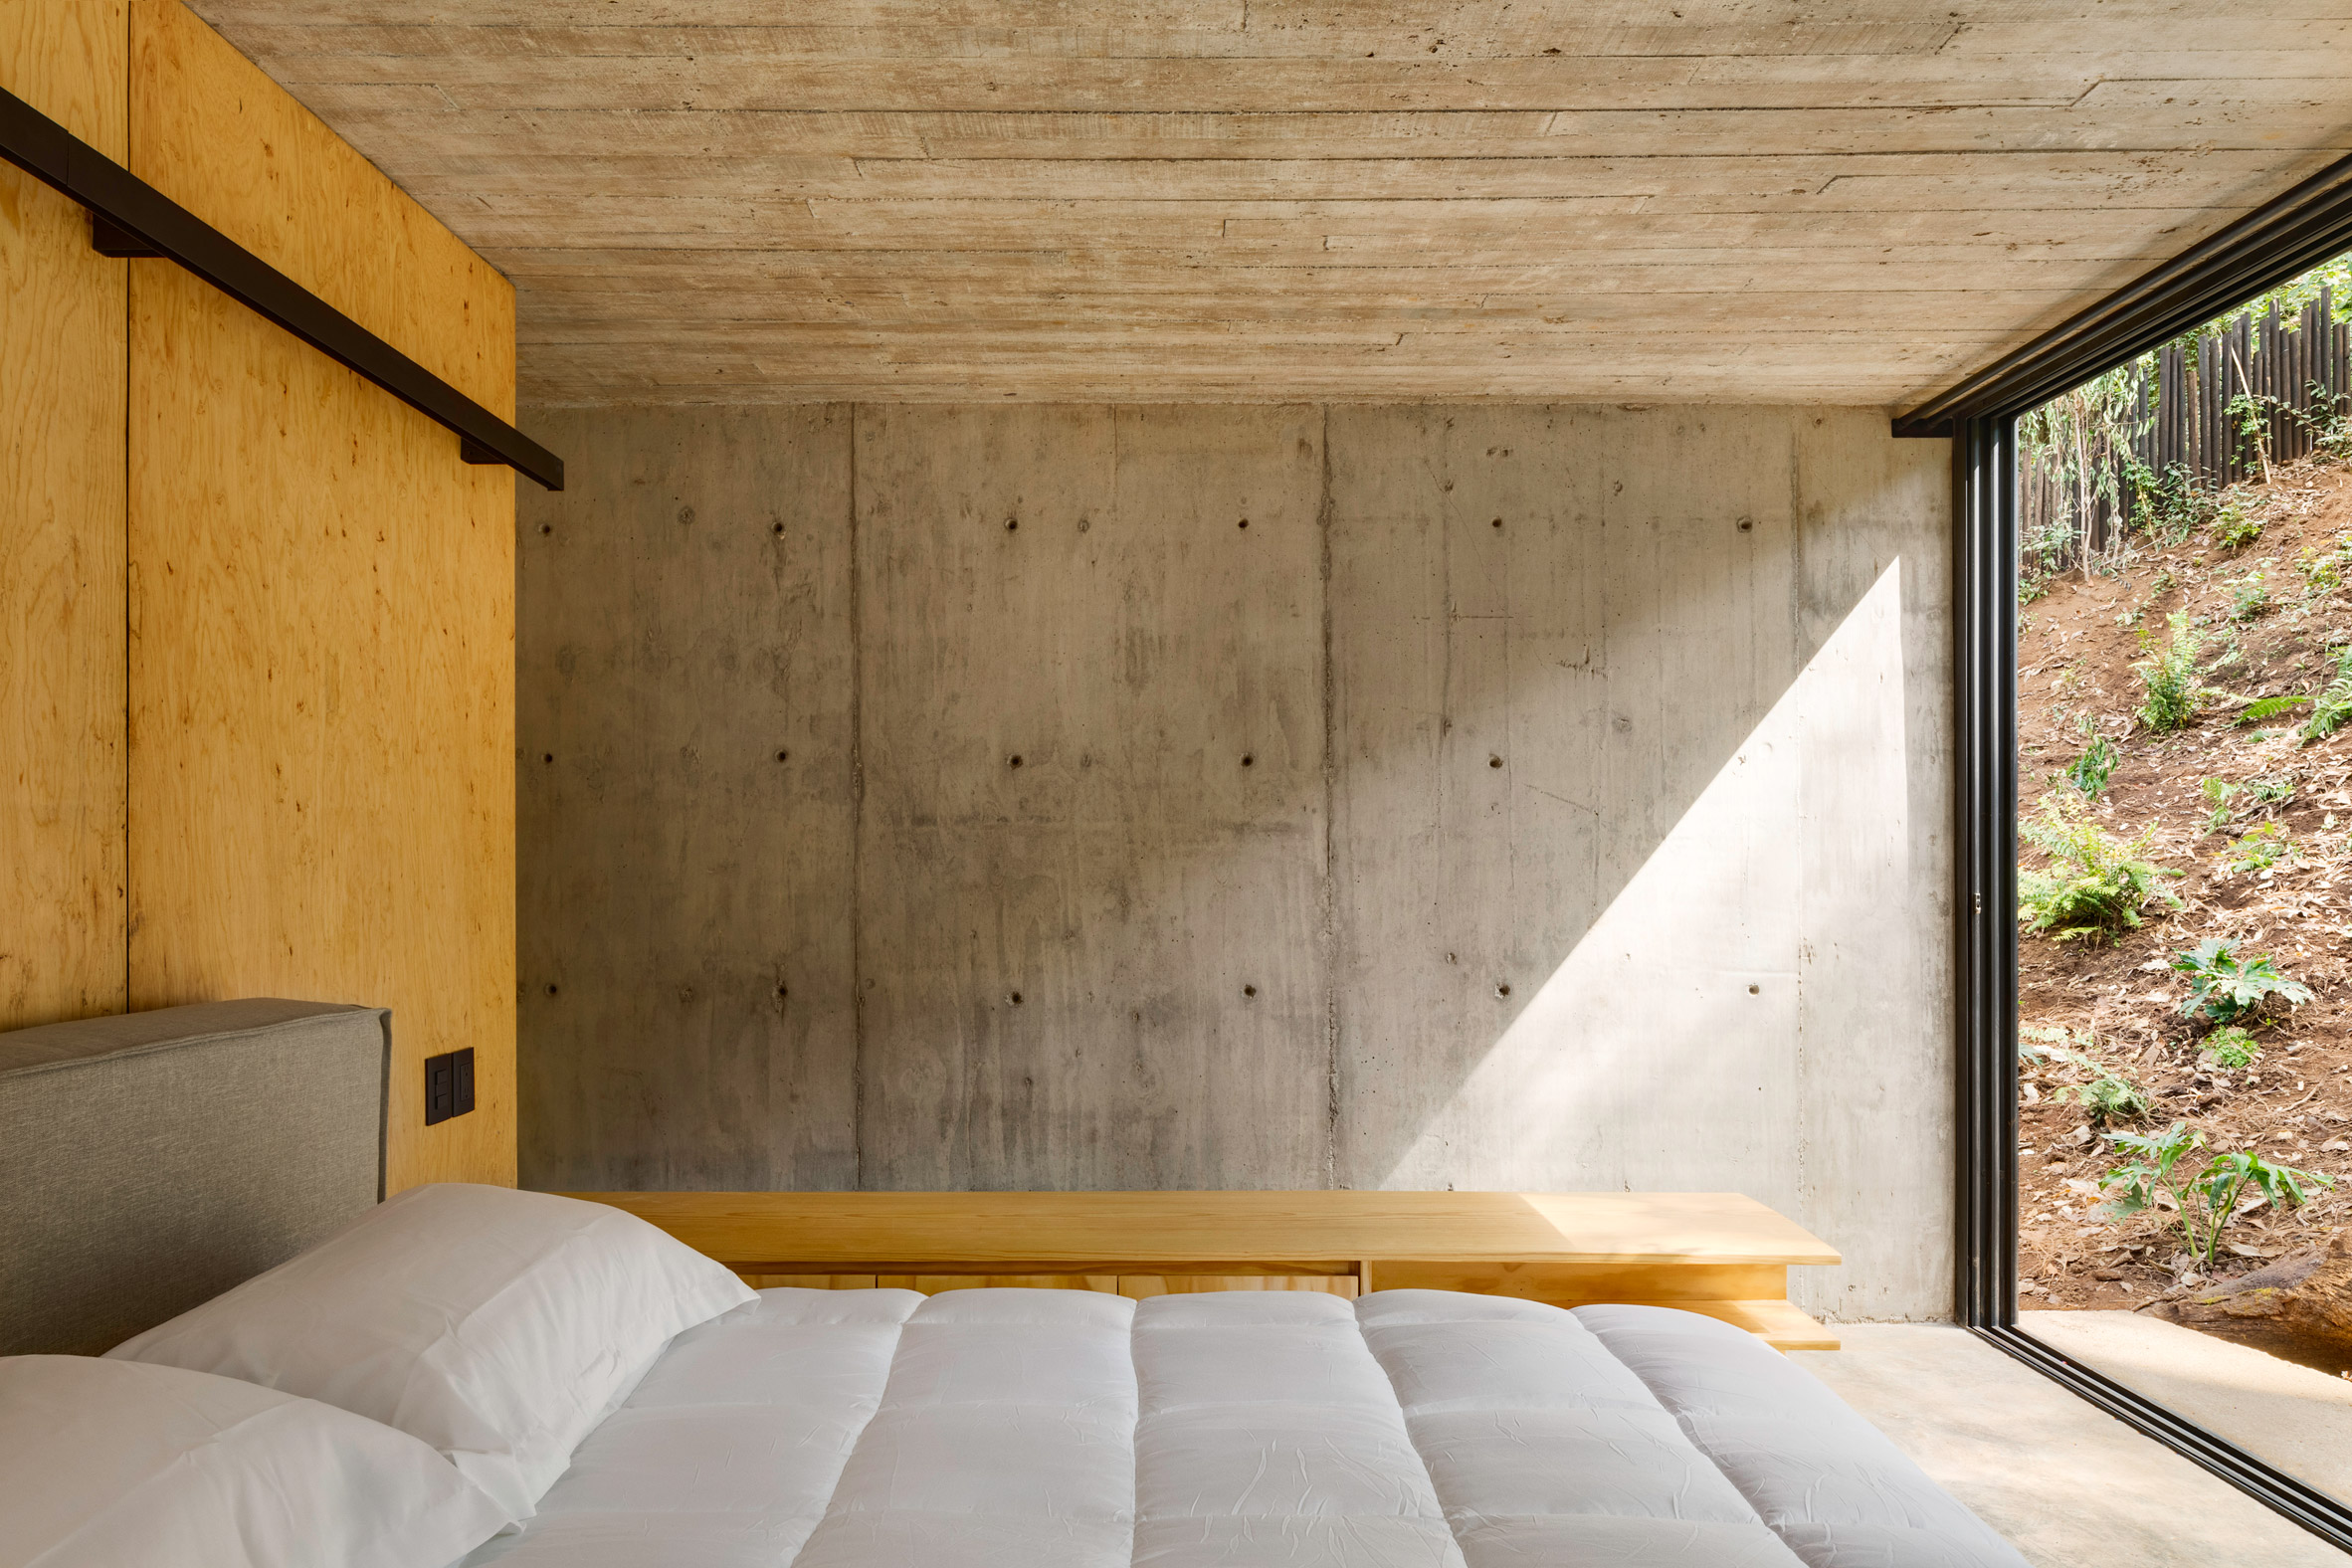 Concrete walls in bedroom of Valle de Bravo home